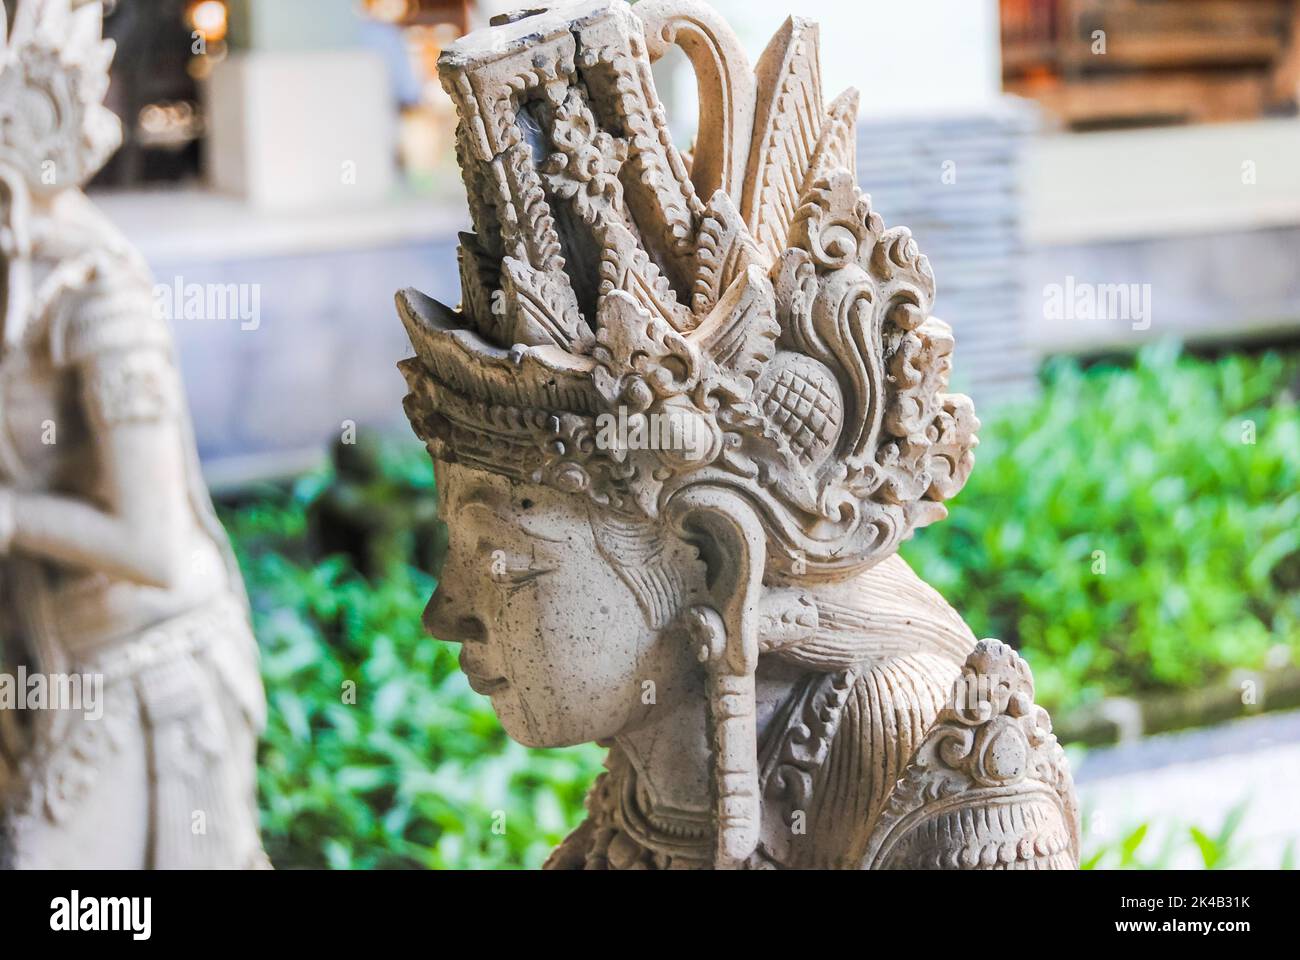 Statua tradizionale balinese in un parco pubblico. Bali, Indonesia Foto Stock